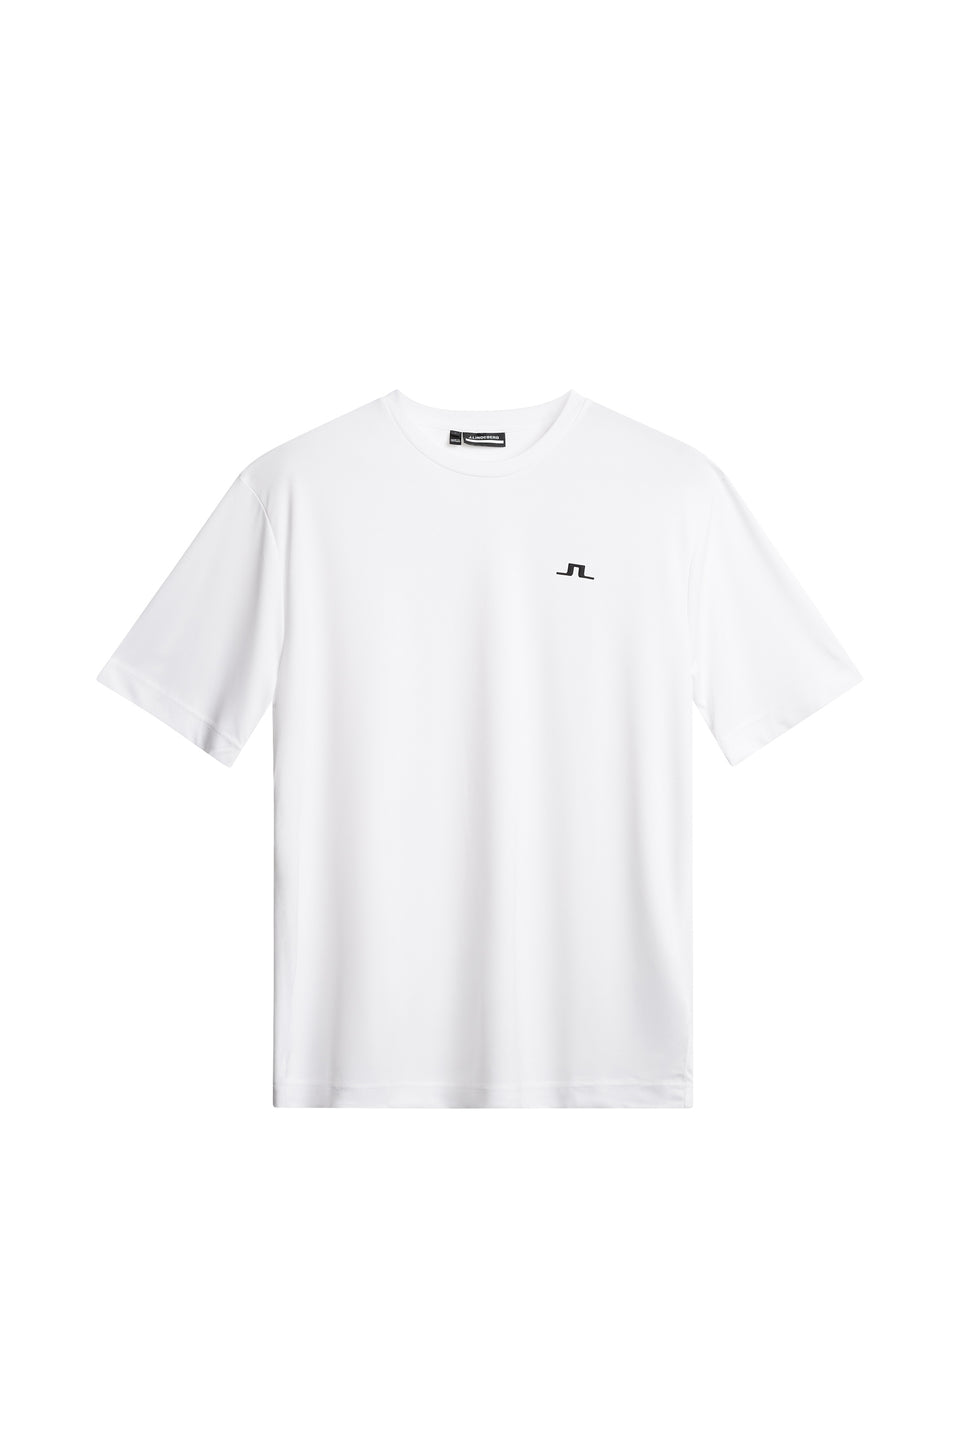 Ade T-shirt / White